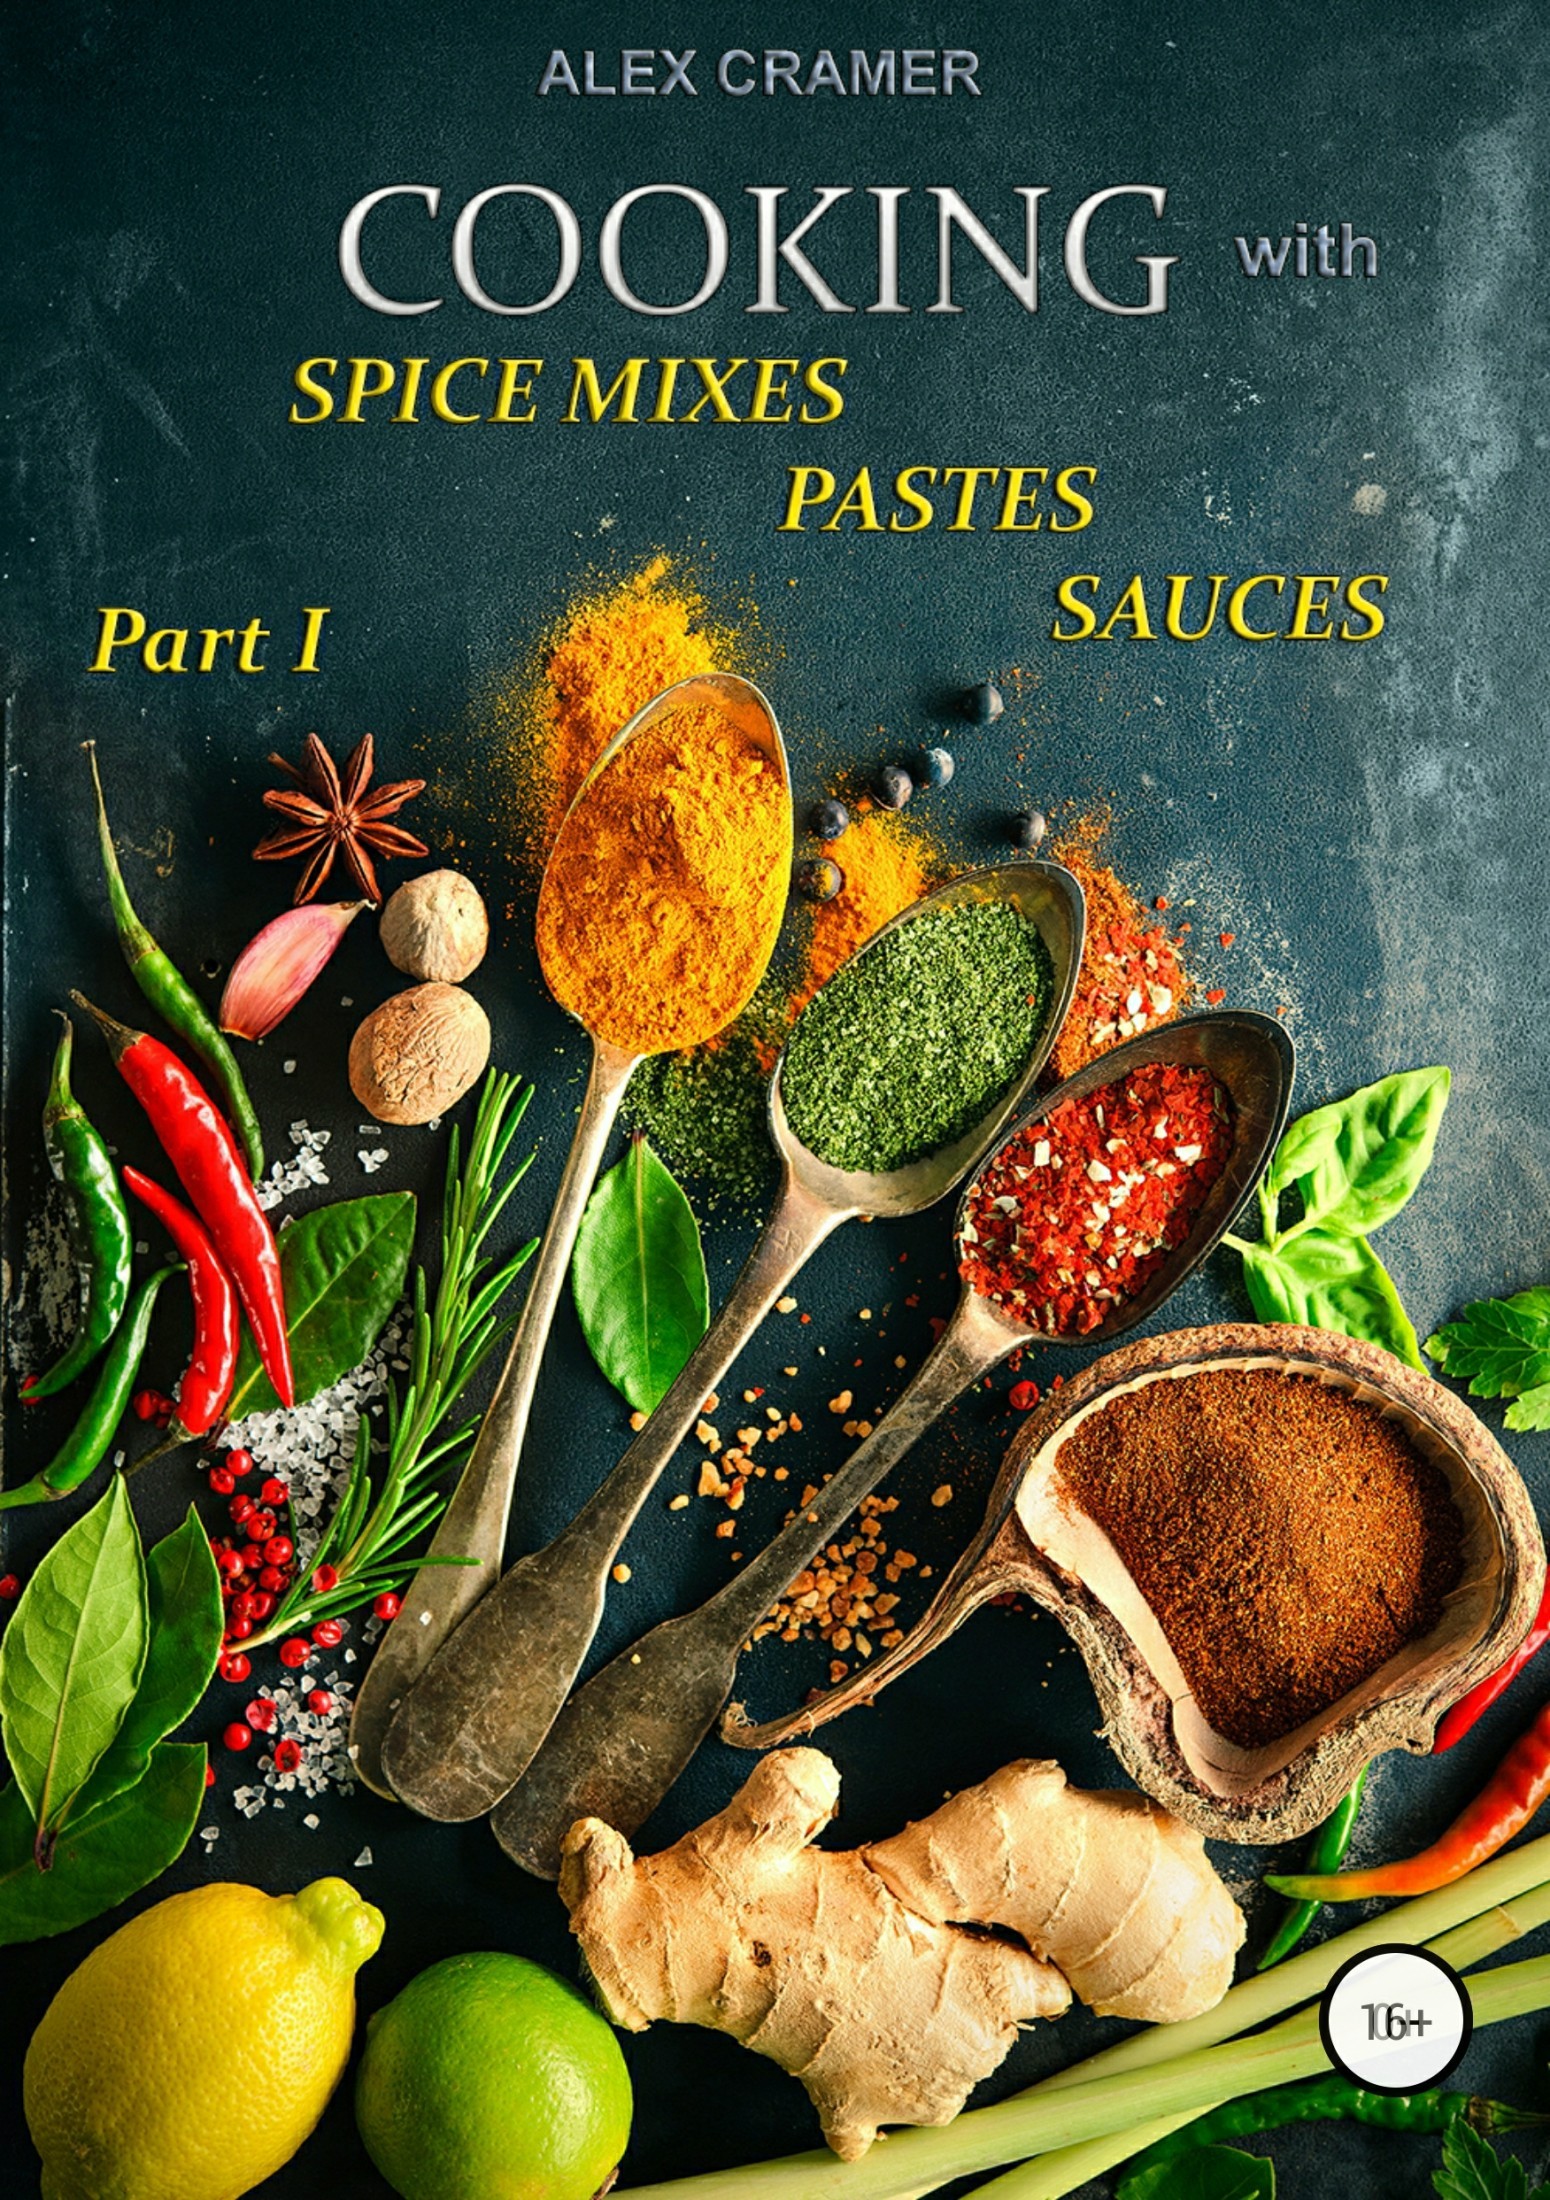 Книга Cooking with spice mixes, pastes and sauces из серии , созданная Alex Cramer, может относится к жанру Хобби, Ремесла, Кулинария. Стоимость электронной книги Cooking with spice mixes, pastes and sauces с идентификатором 31735286 составляет 249.00 руб.